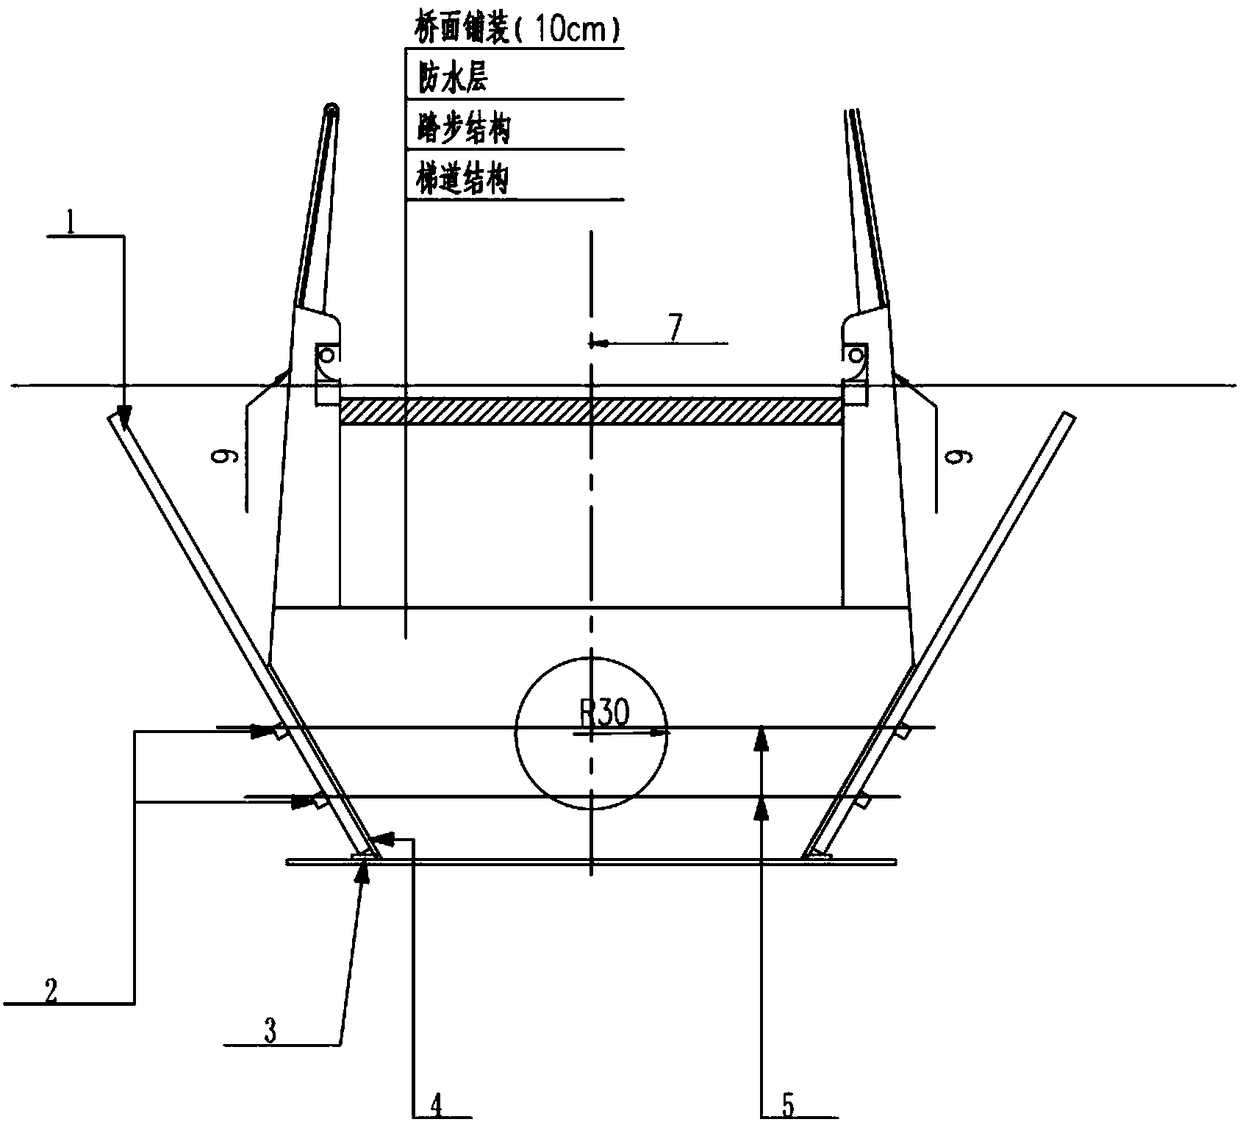 Forming method of arc-shaped box girder formwork